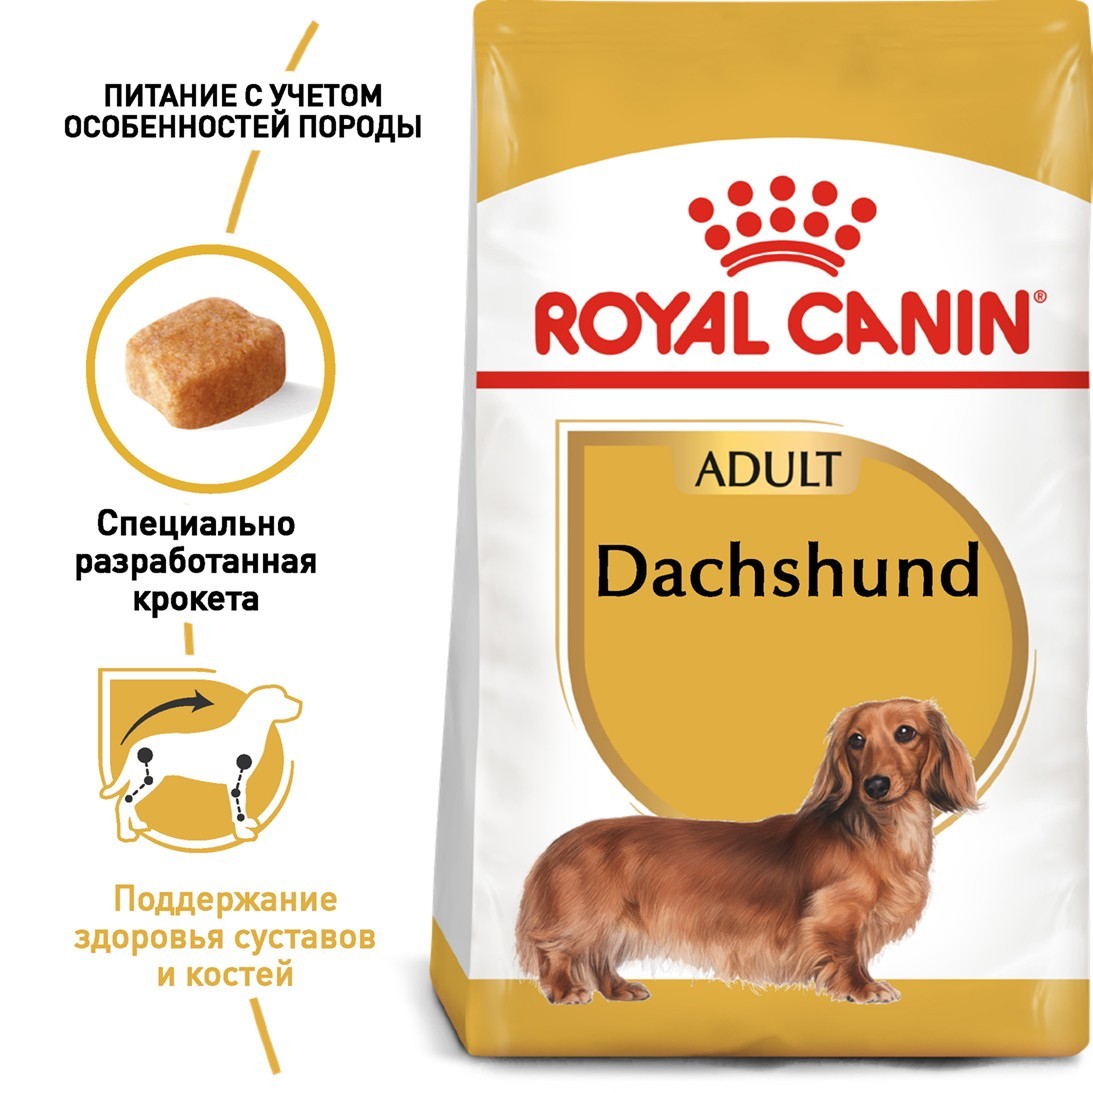 

Royal Canin DACHSHUND Adult 1.5 кг Полнорационный сбалансированный корм для взрослых собак породы Такса в возрасте старше 10 месяцев